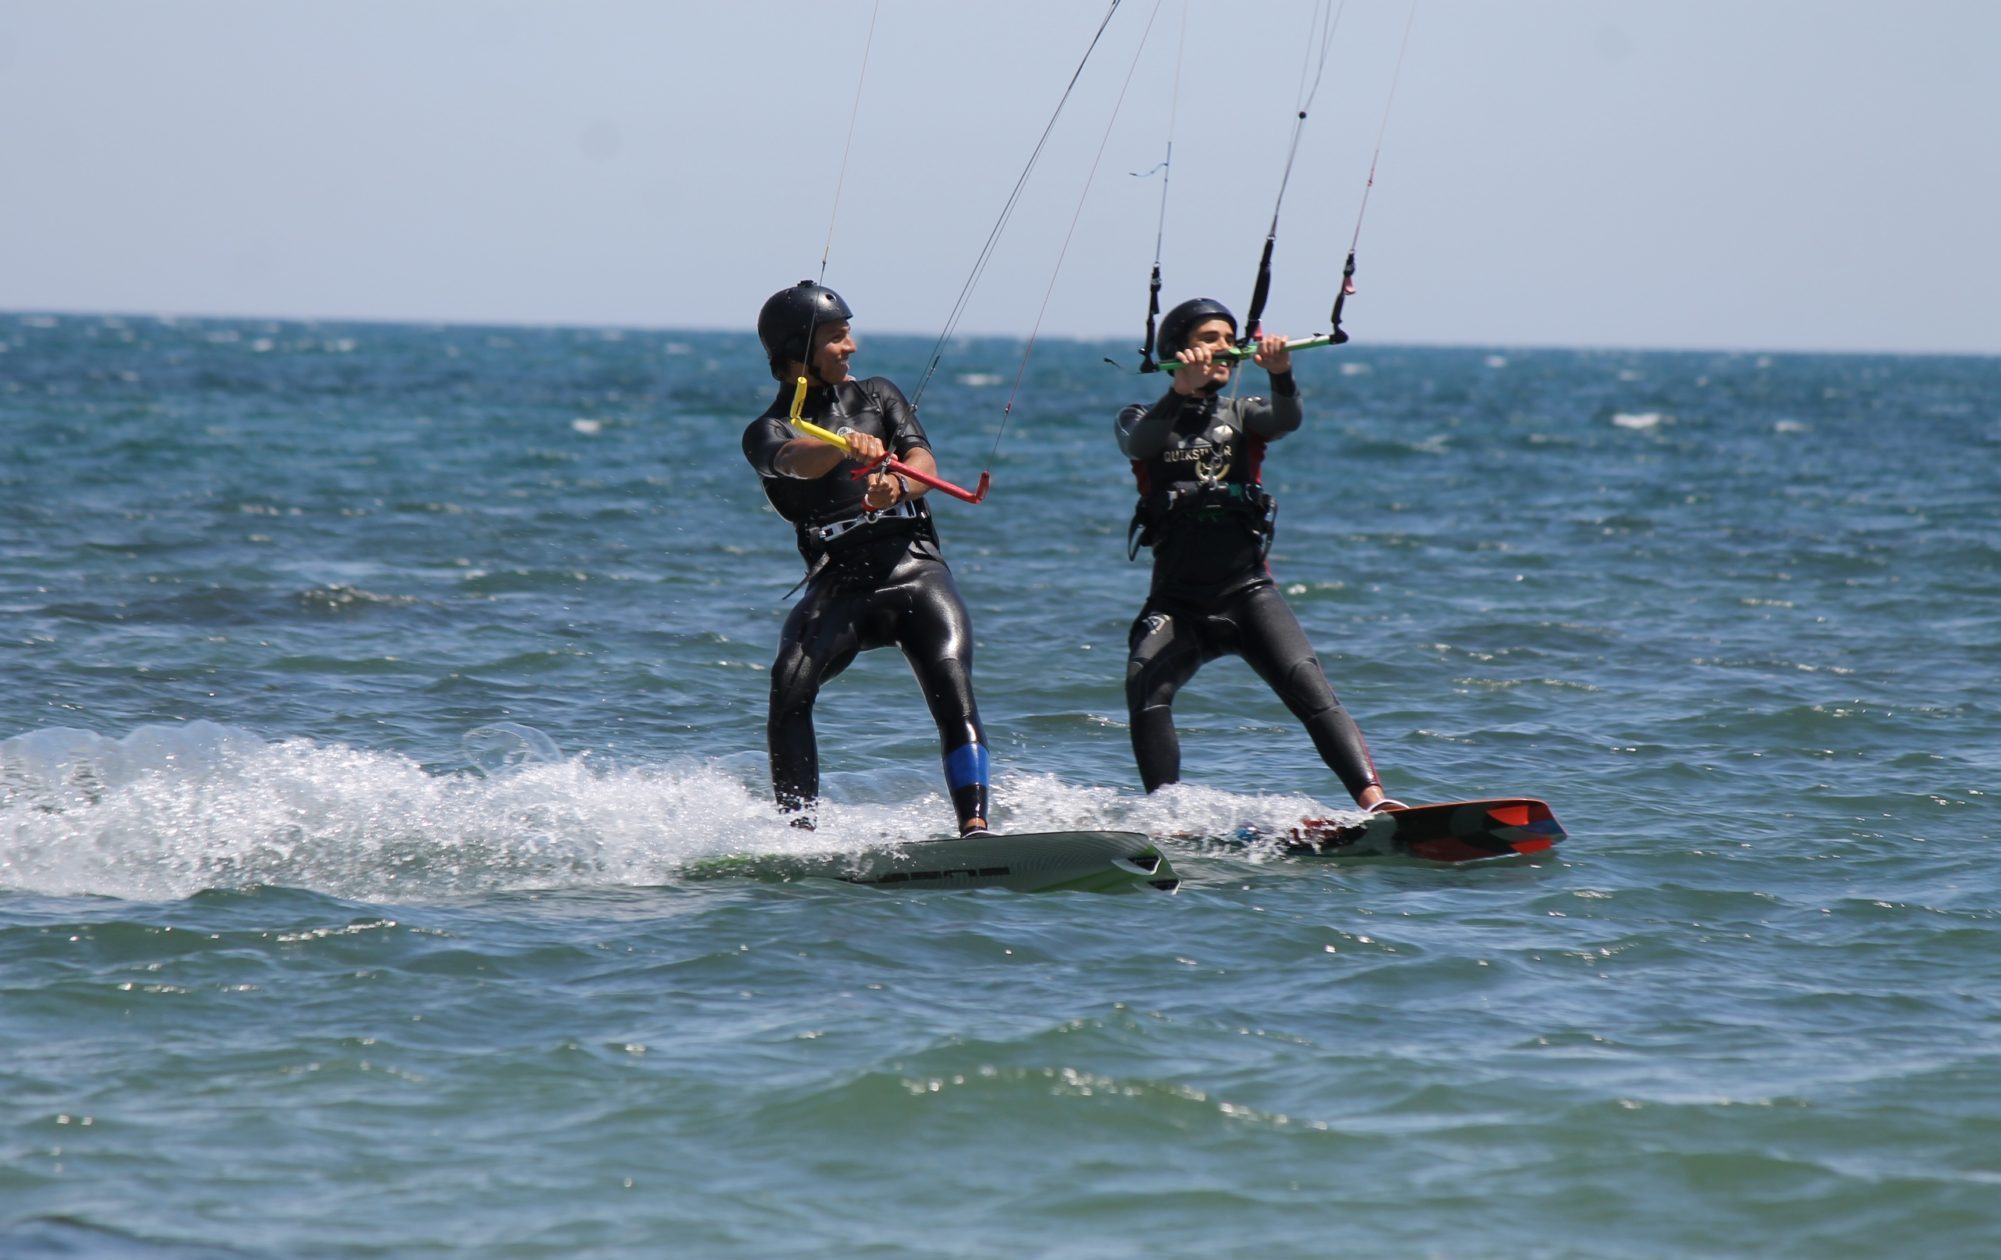 Fortgeschrittene Kitesurfkurse für Fortgeschrittene in Punta Trettu, Sardinien